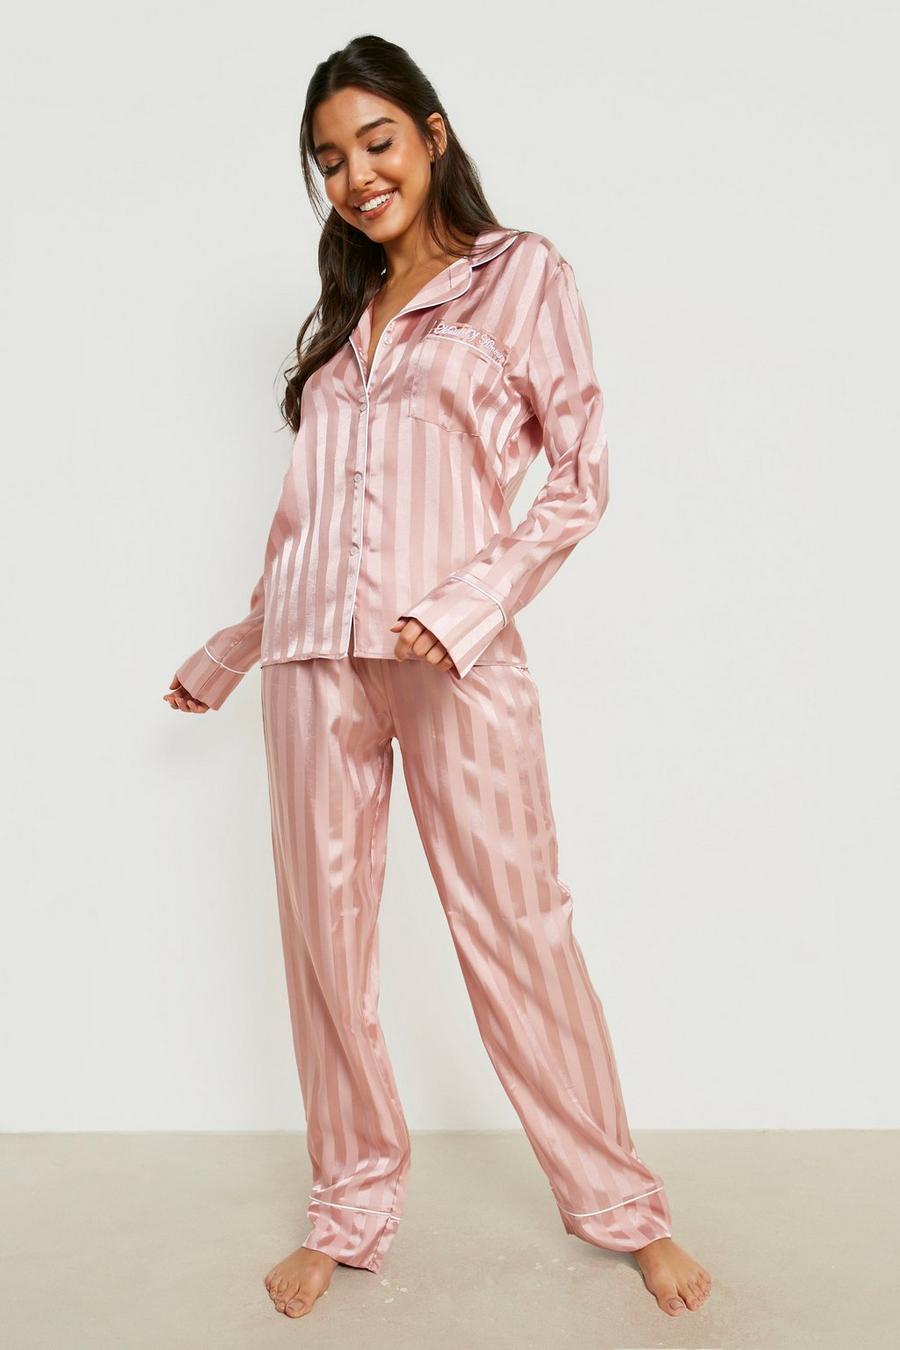 Kleding Dameskleding Pyjamas & Badjassen Pyjamashorts & Pyjamabroeken Broek Oscar Rossa Women's Silk Sleepwear 100% Silk Pajama Pants 